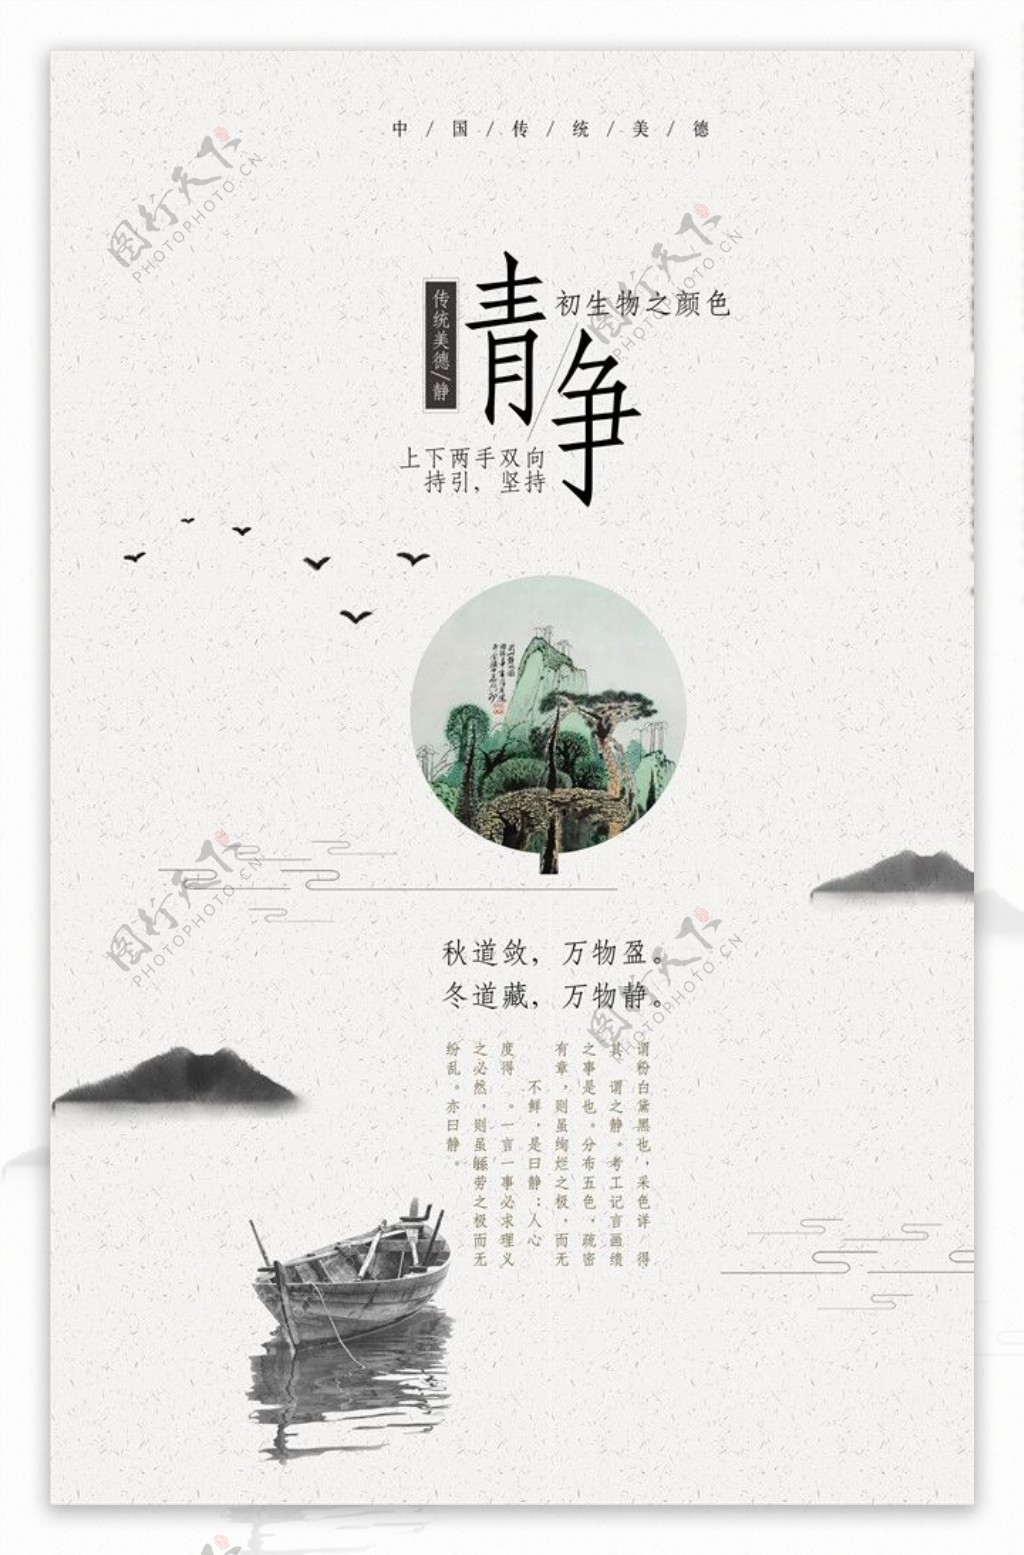 中国风标语文化海报设计